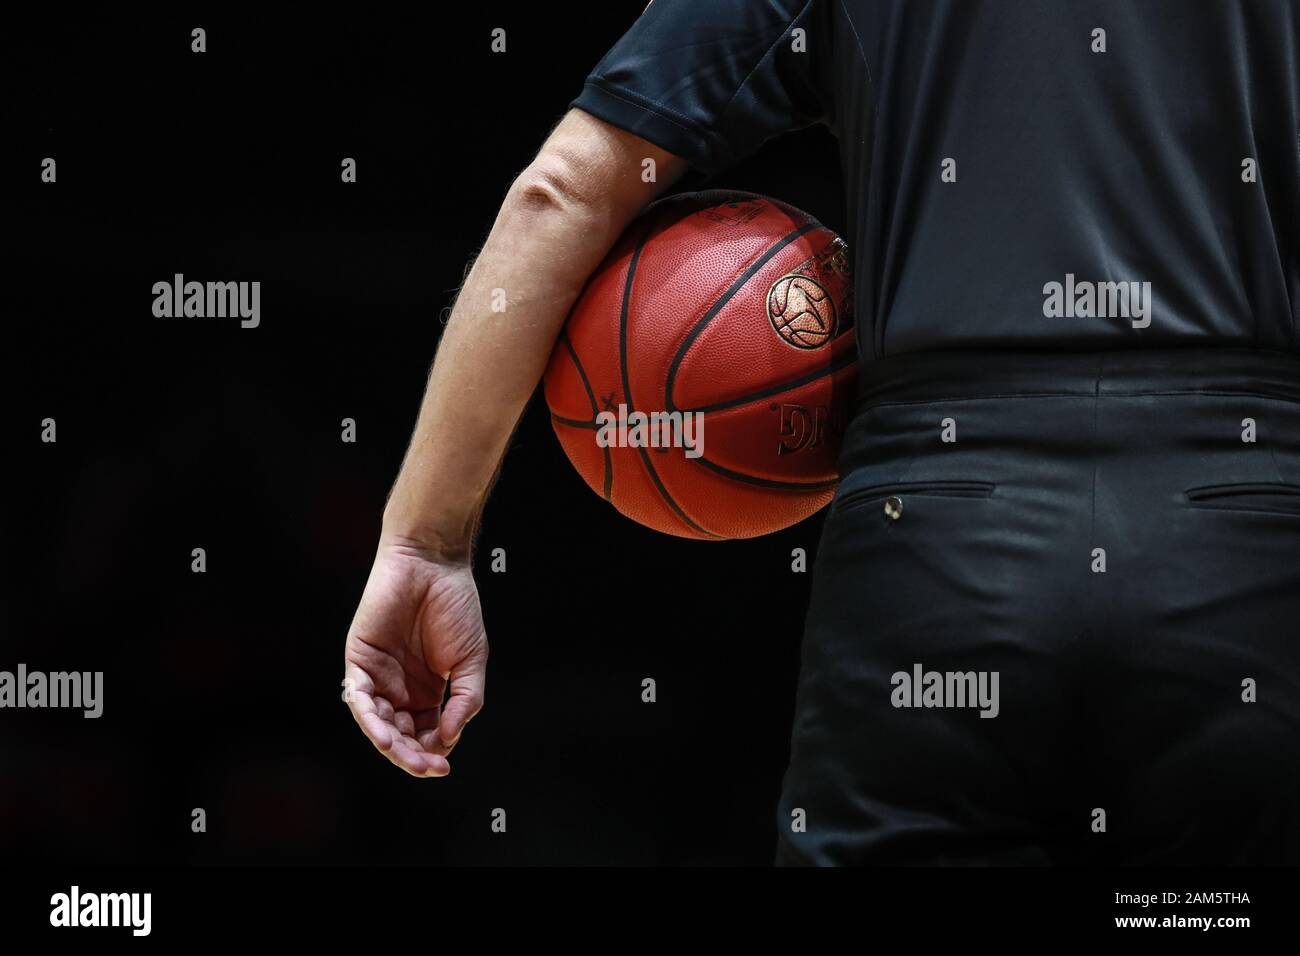 Braunschweig, Germania, 14 dicembre 2019: Un arbitro con uniforme nera tiene la palla ufficiale durante un gioco Basketball BBL Pokal Foto Stock